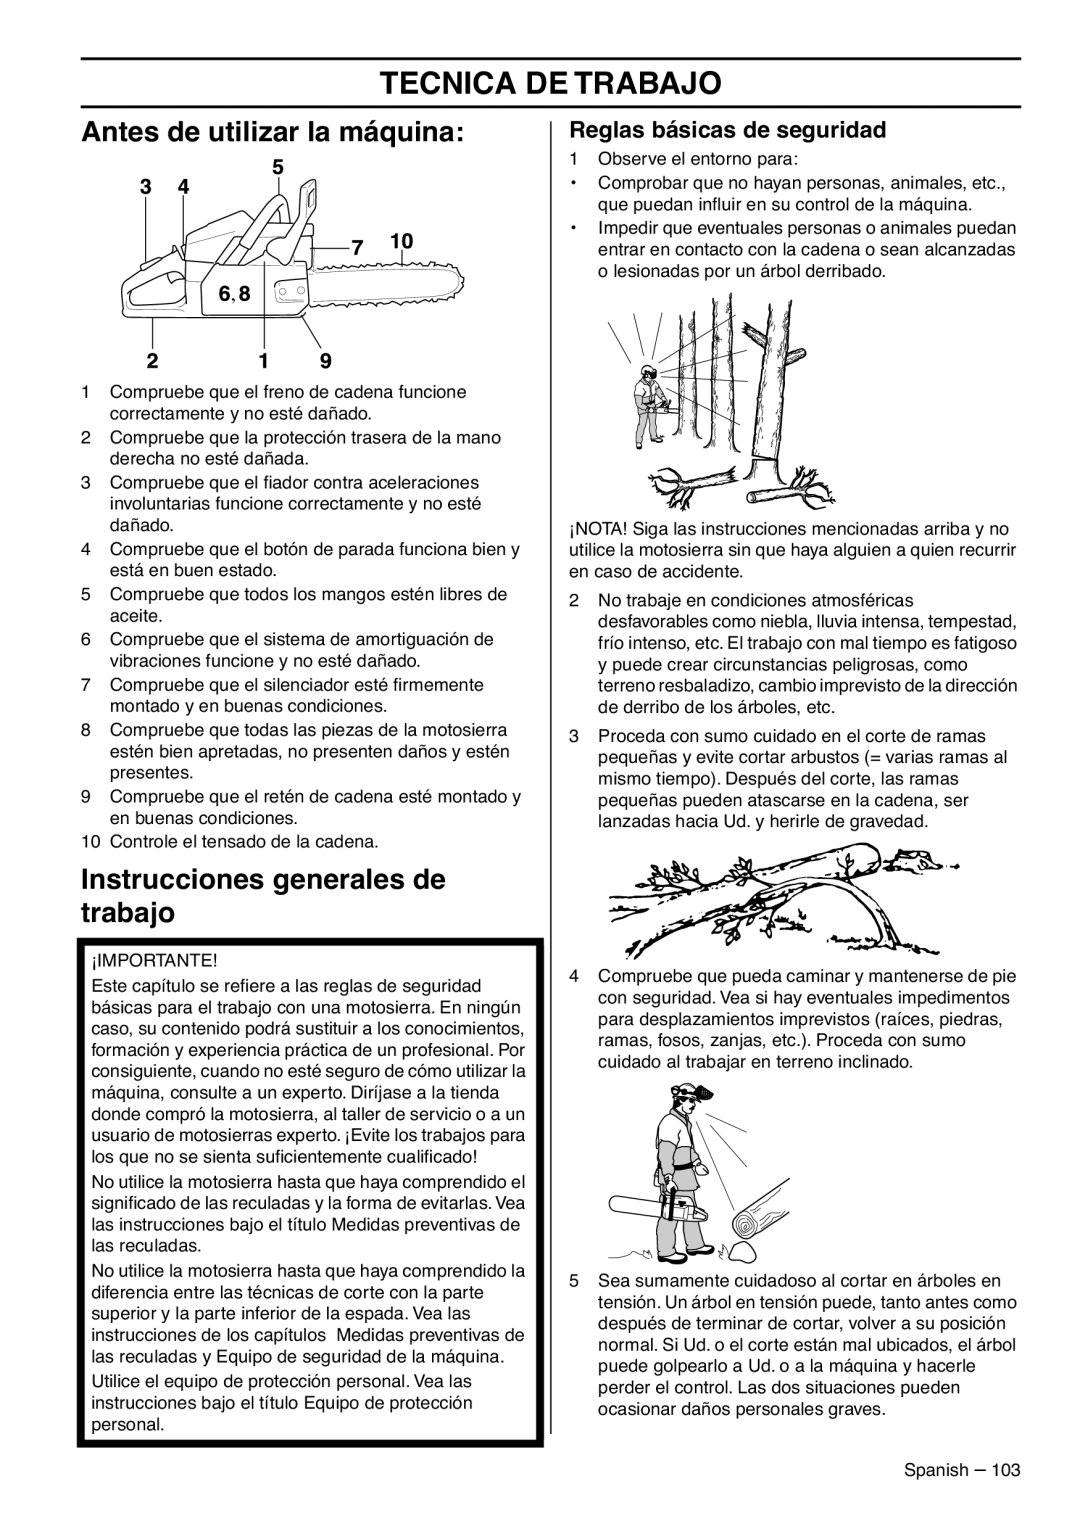 RedMax GZ7000 manual Tecnica De Trabajo, Antes de utilizar la máquina, Instrucciones generales de trabajo 